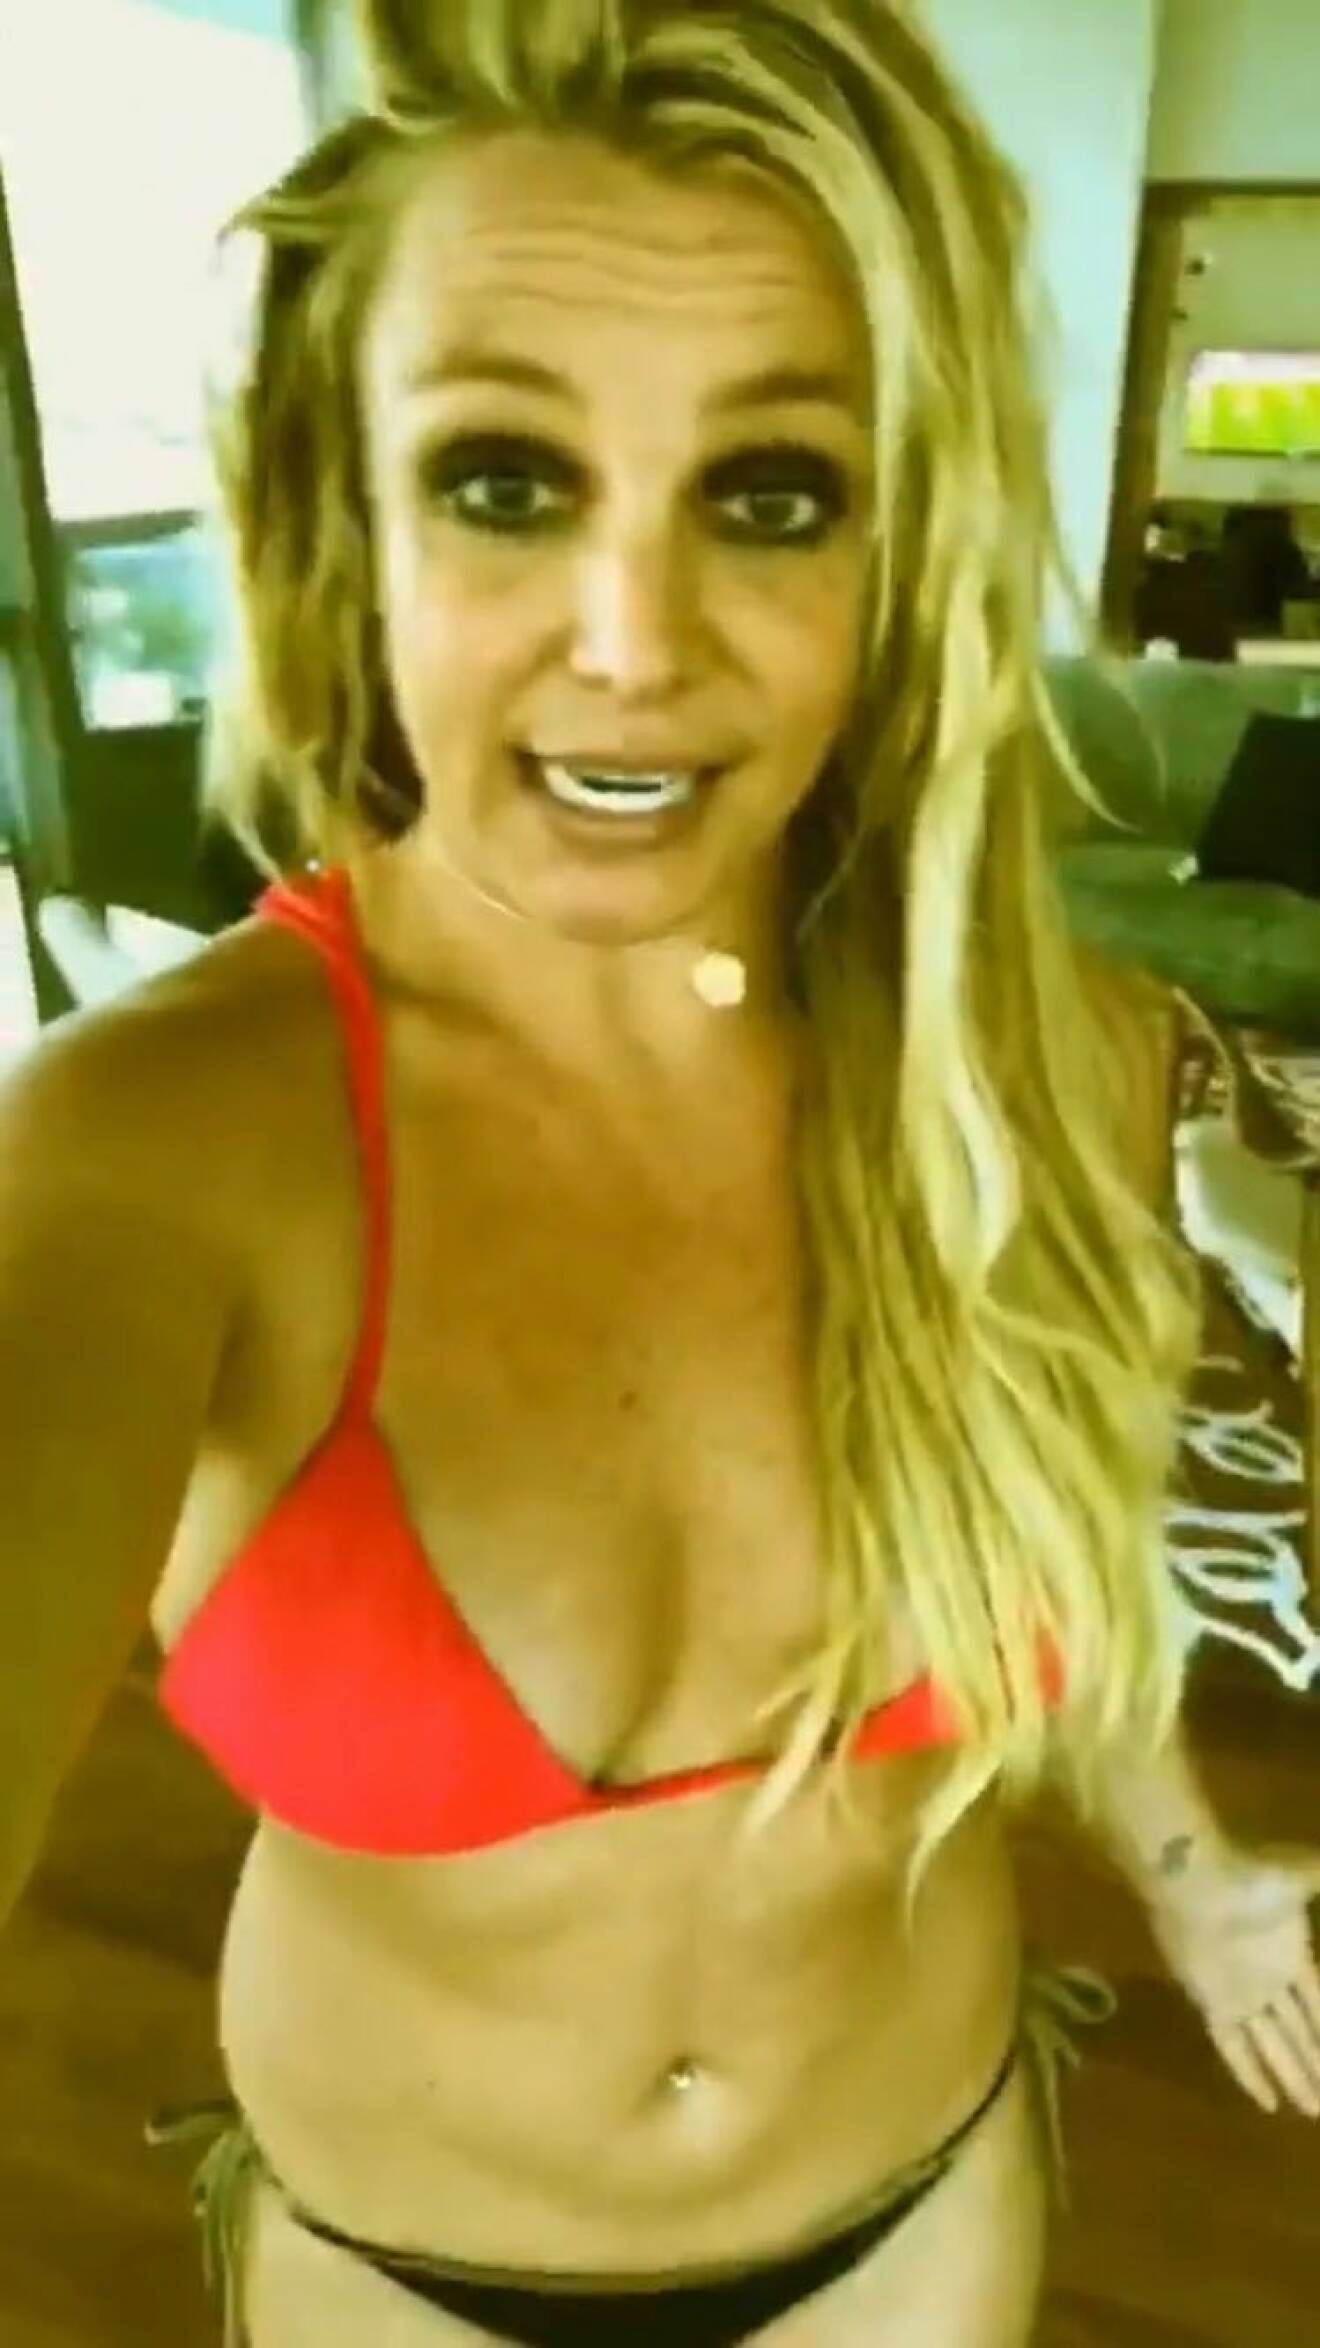 I videor på Instagram story förklarar Britney Spears för fansen varför hon är arg över bilderna.